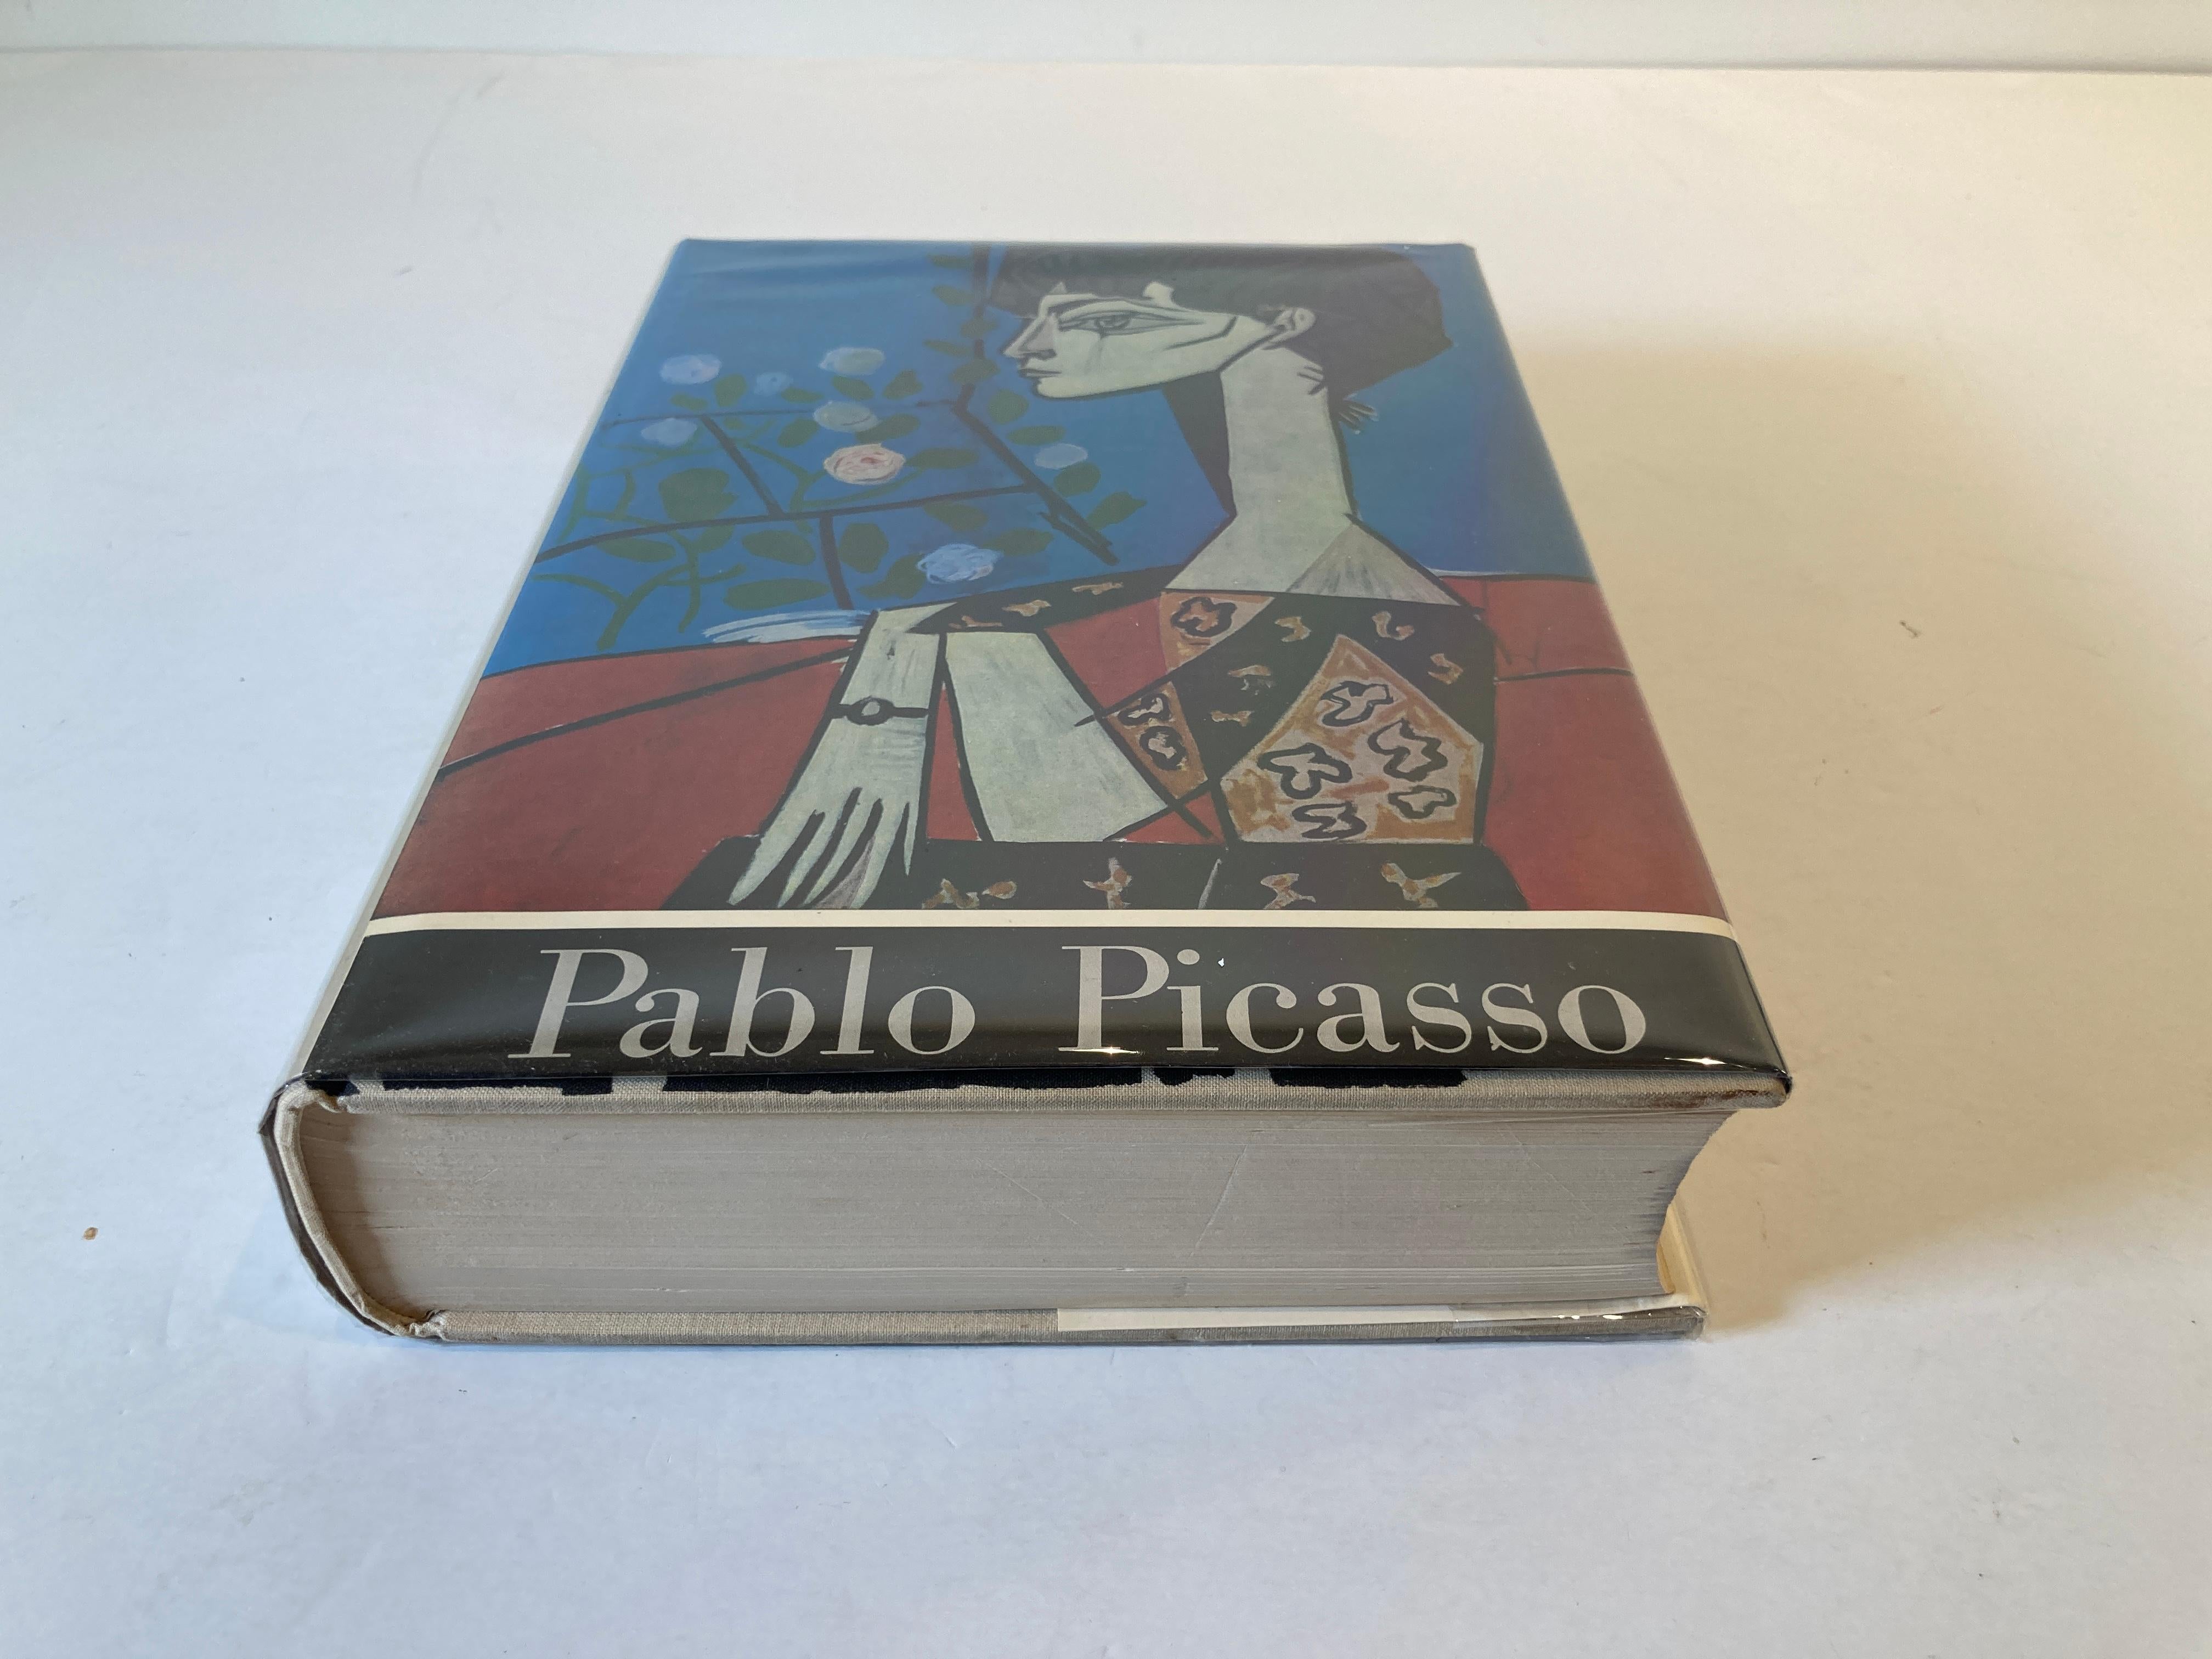 picasso taschen book